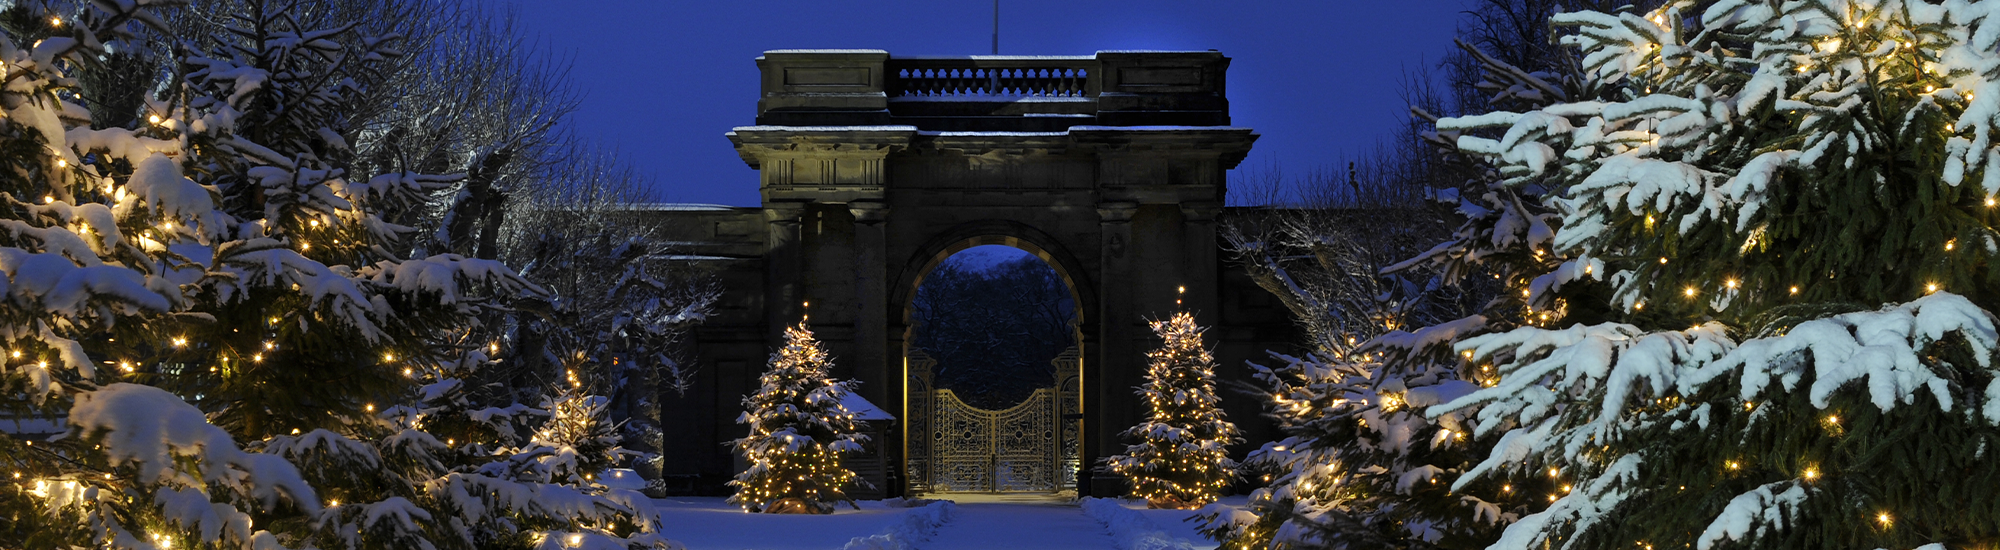 tourhub | Just Go Holidays | Beautiful Buxton & Chatsworth House at Christmastime 